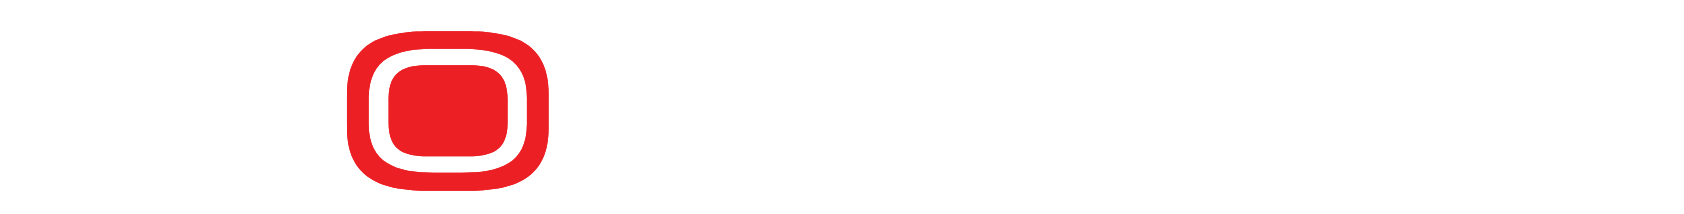 Sportradar logo large for dark backgrounds (transparent PNG)